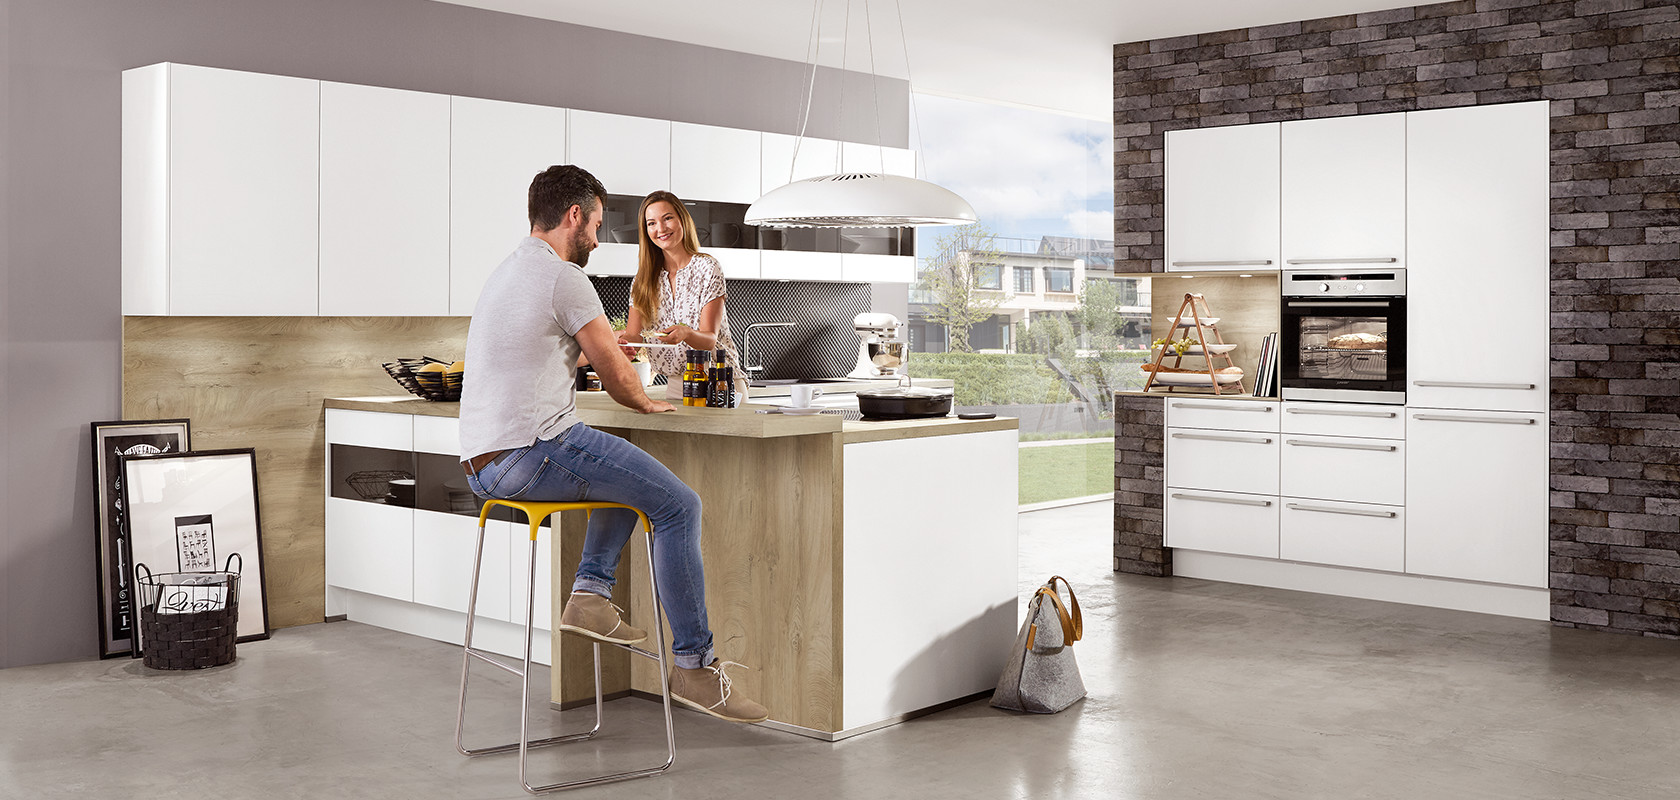 Un entorno de cocina moderna con una pareja sonriente interactuando en una isla de preparación de comidas, con electrodomésticos elegantes y estética de diseño minimalista.